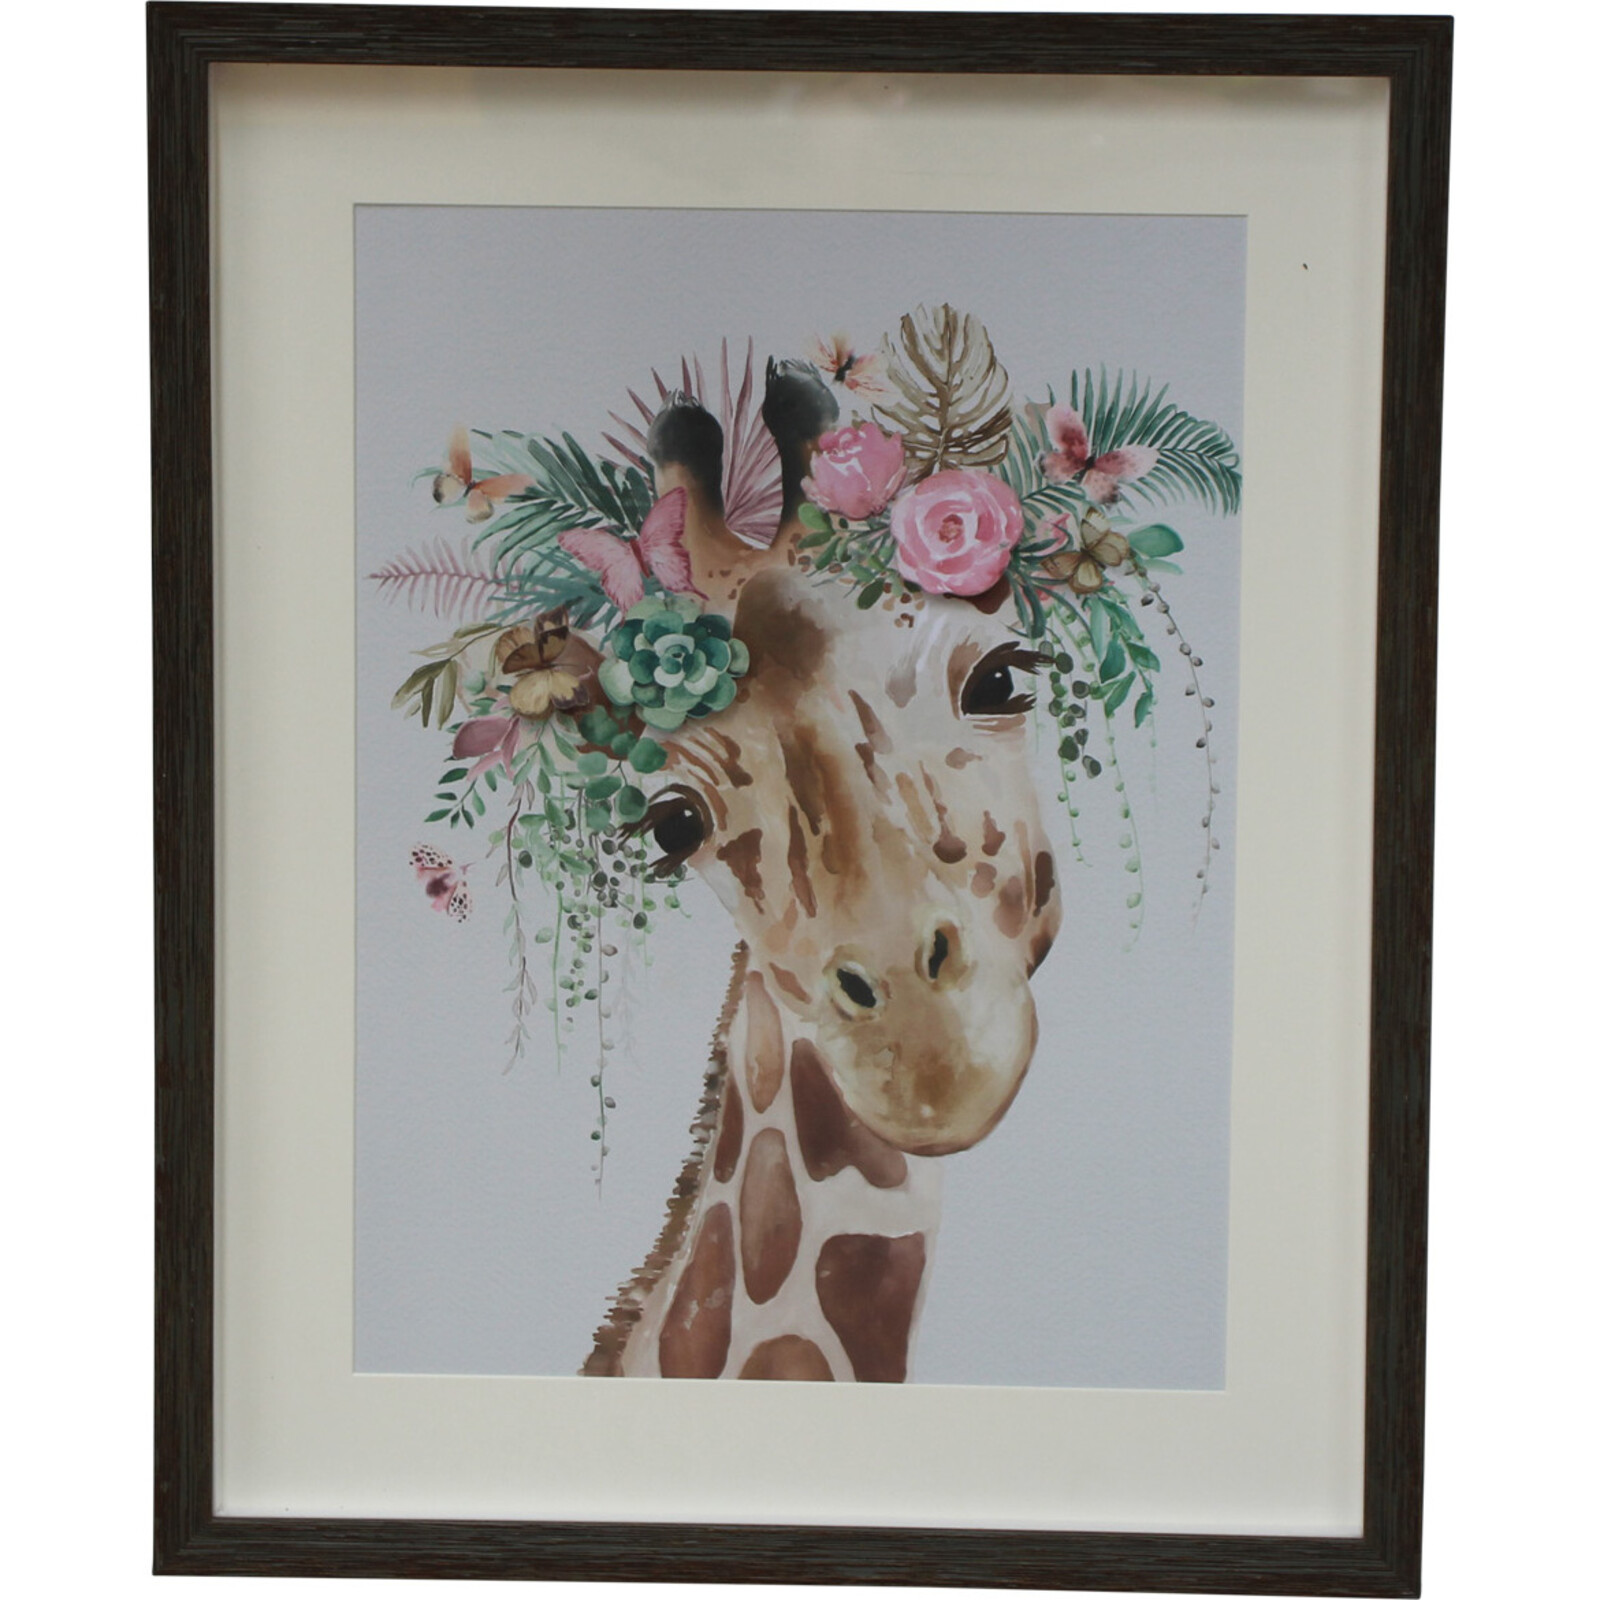 Framed Print Giraffe Flowers